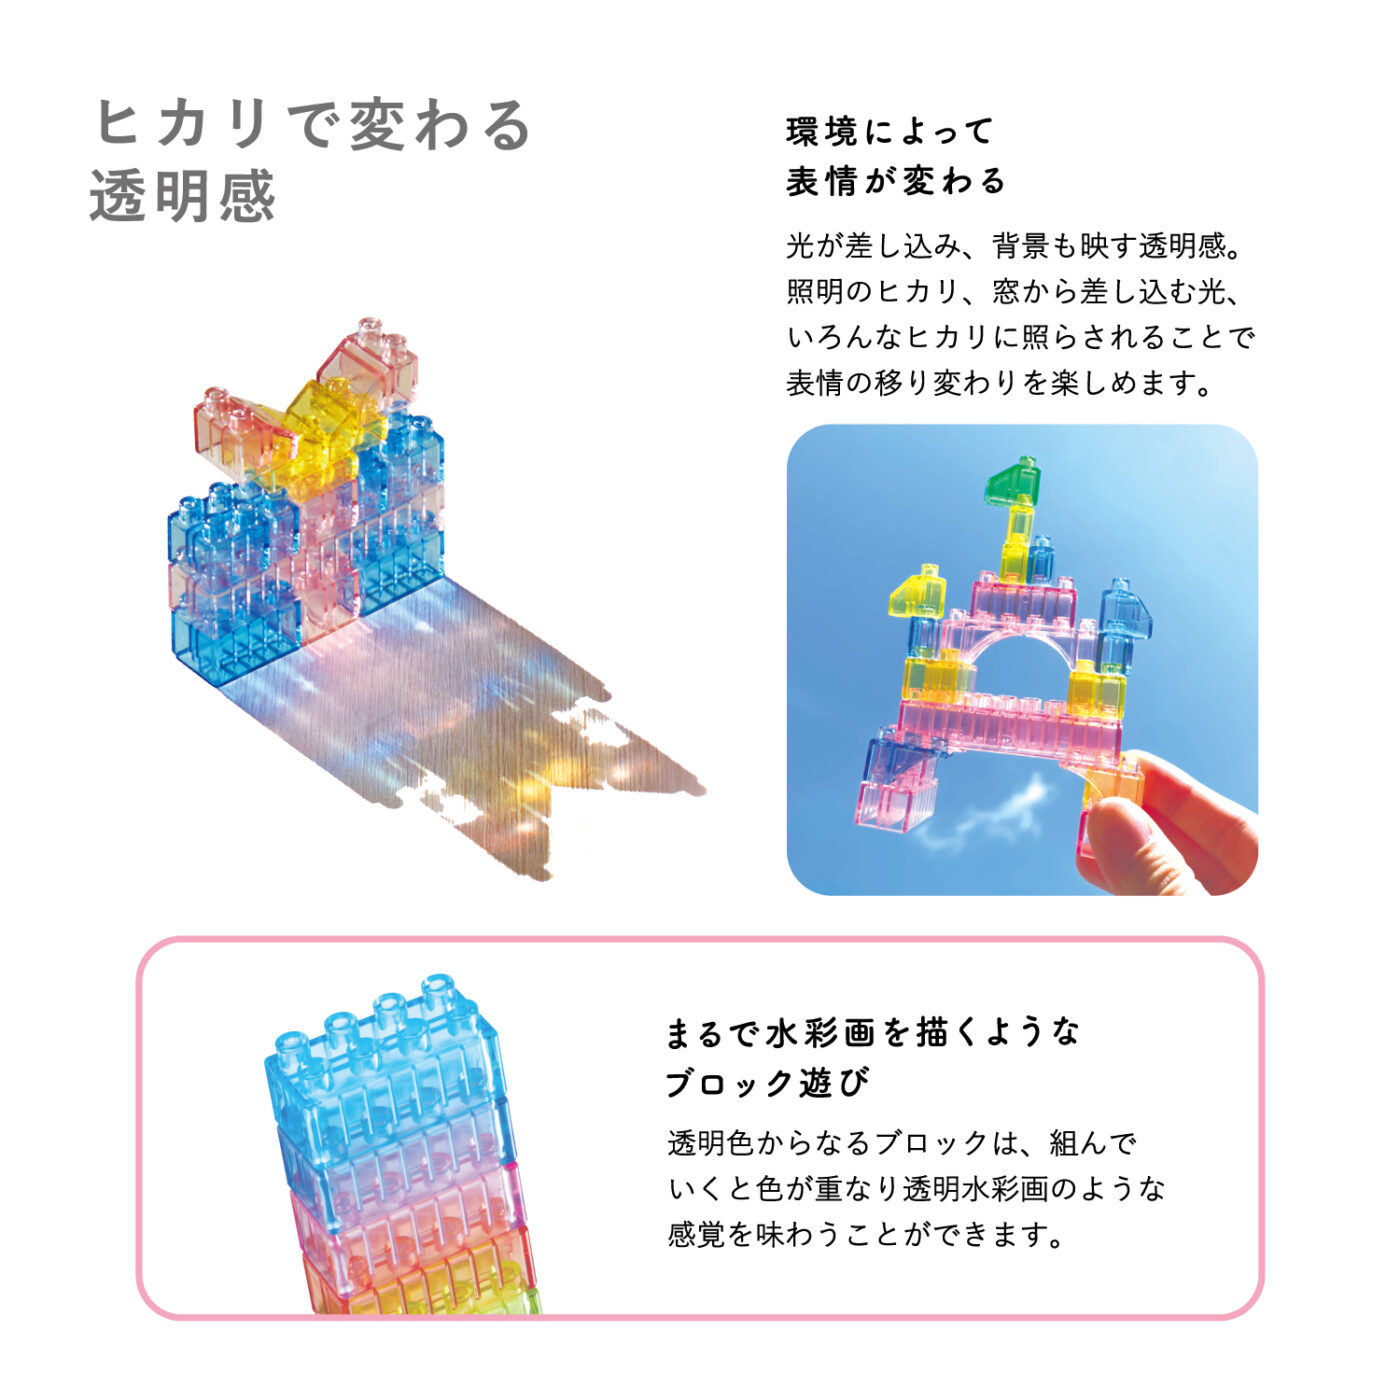 ダイヤブロック HIKARIIRO(ヒカリイロ) Mの商品画像5